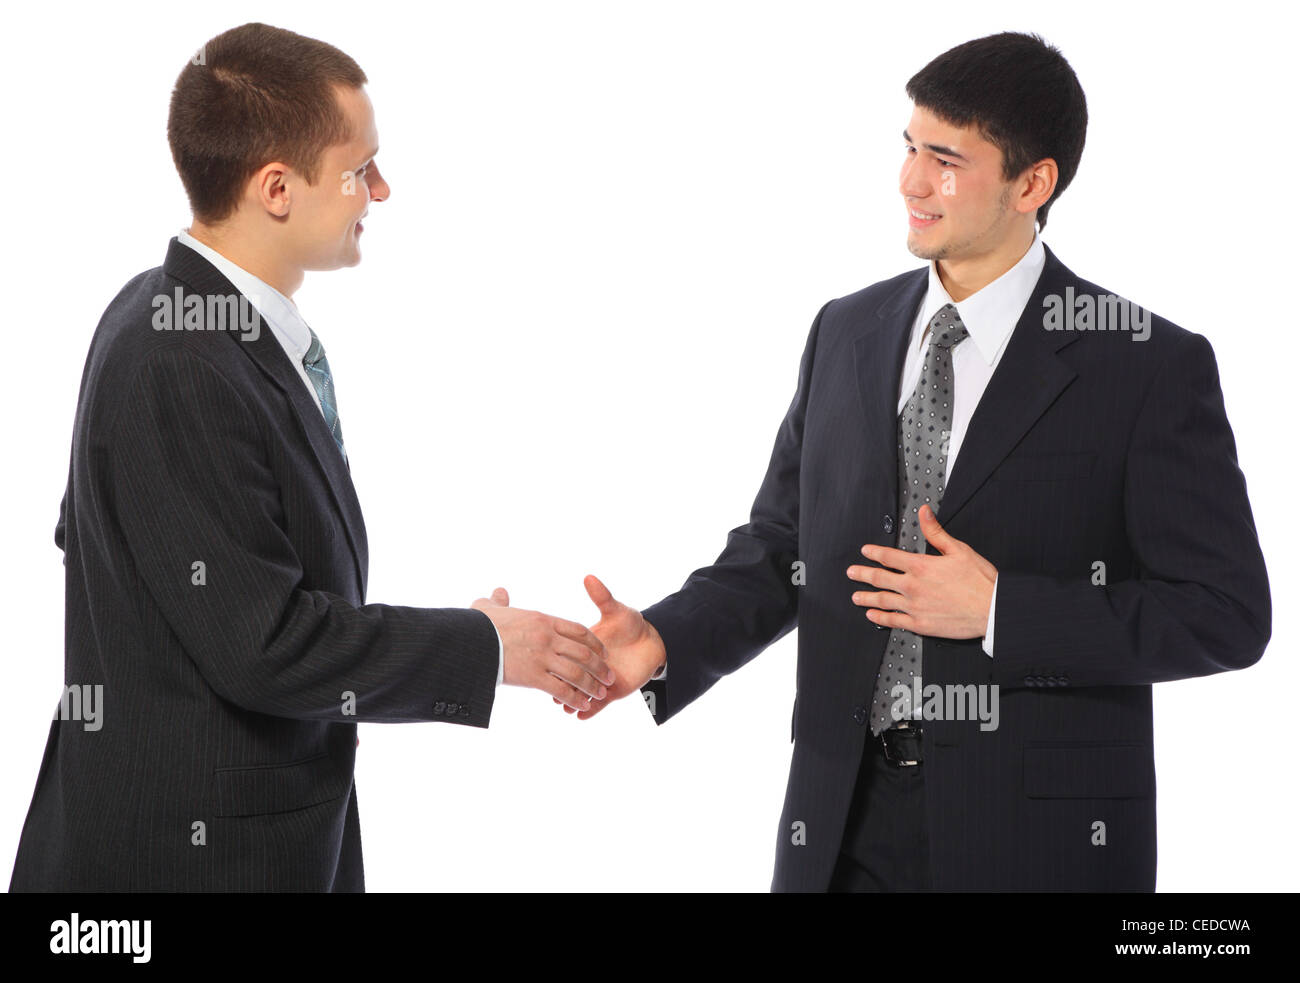 Встречал приветствовать. Люди здороваются. Люди пожимают друг другу руки. Мужчины пожимают руки. Мужчины здороваются.